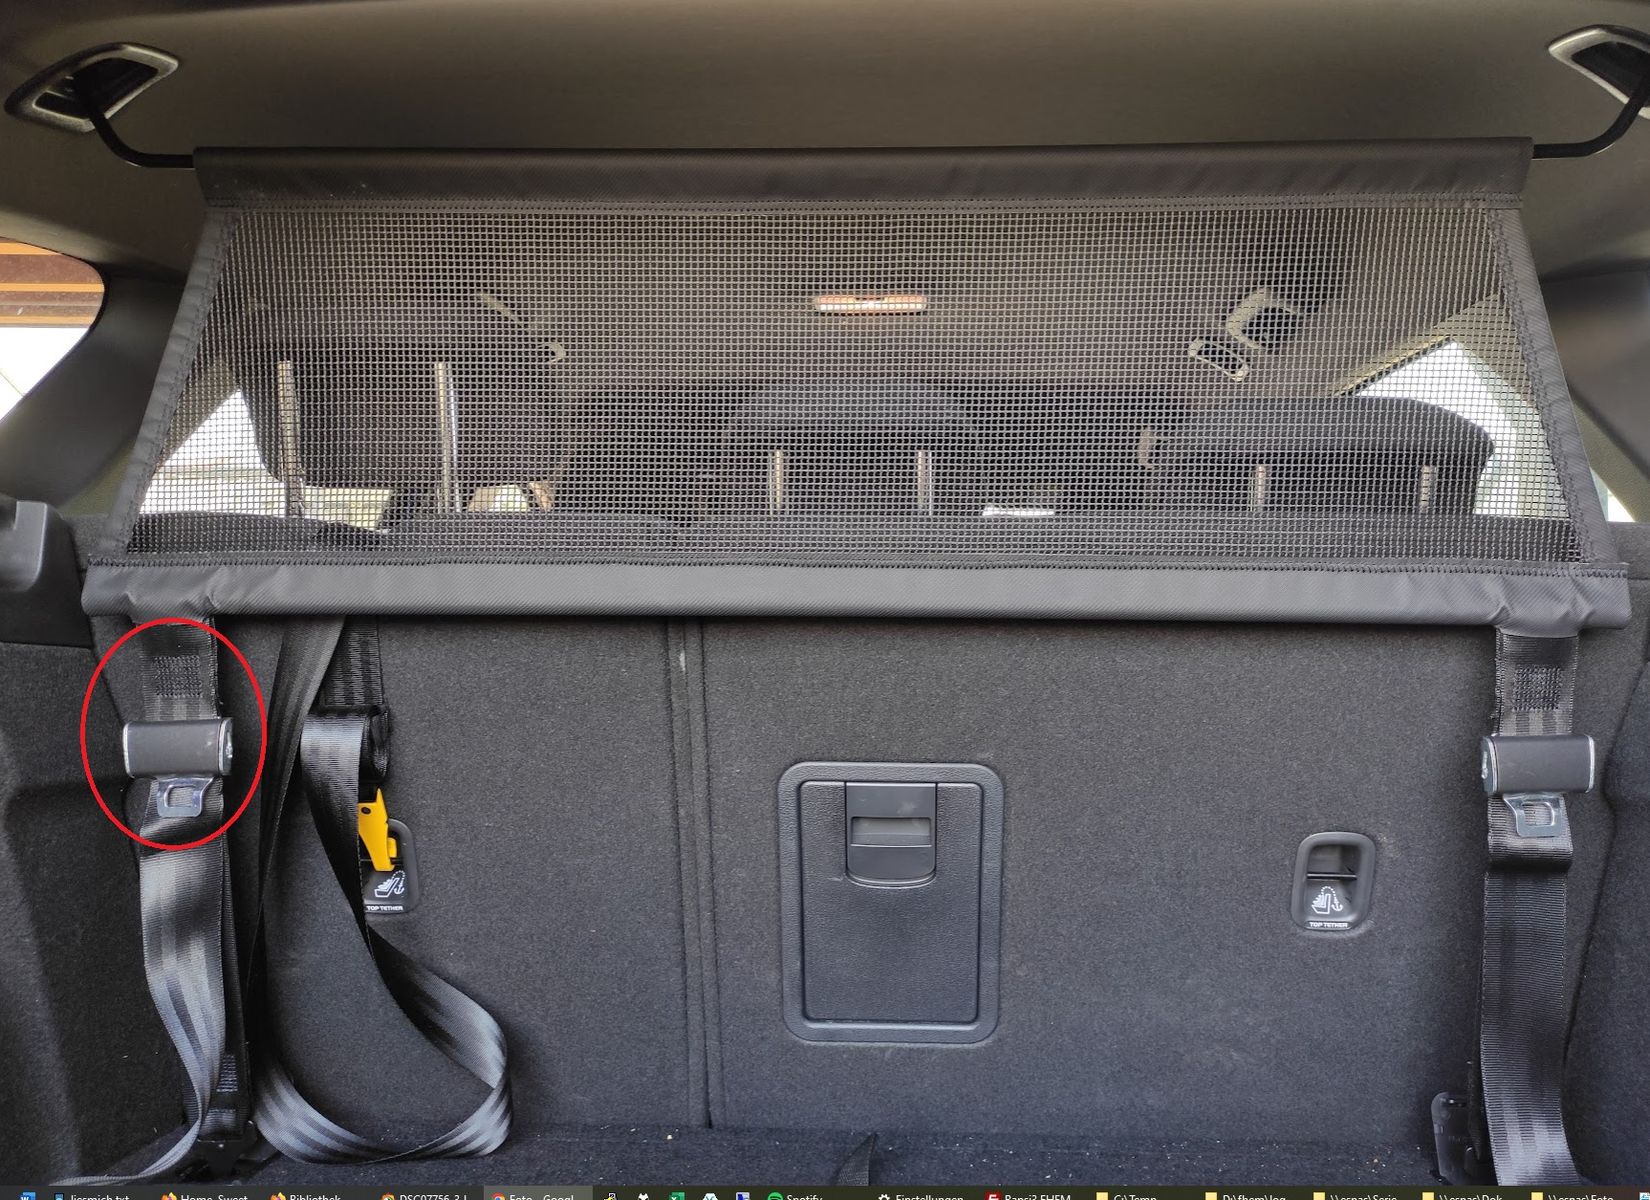 Kofferraumnetz richtig montieren (Kombi) - DIY i30 - Hyundai Forum 